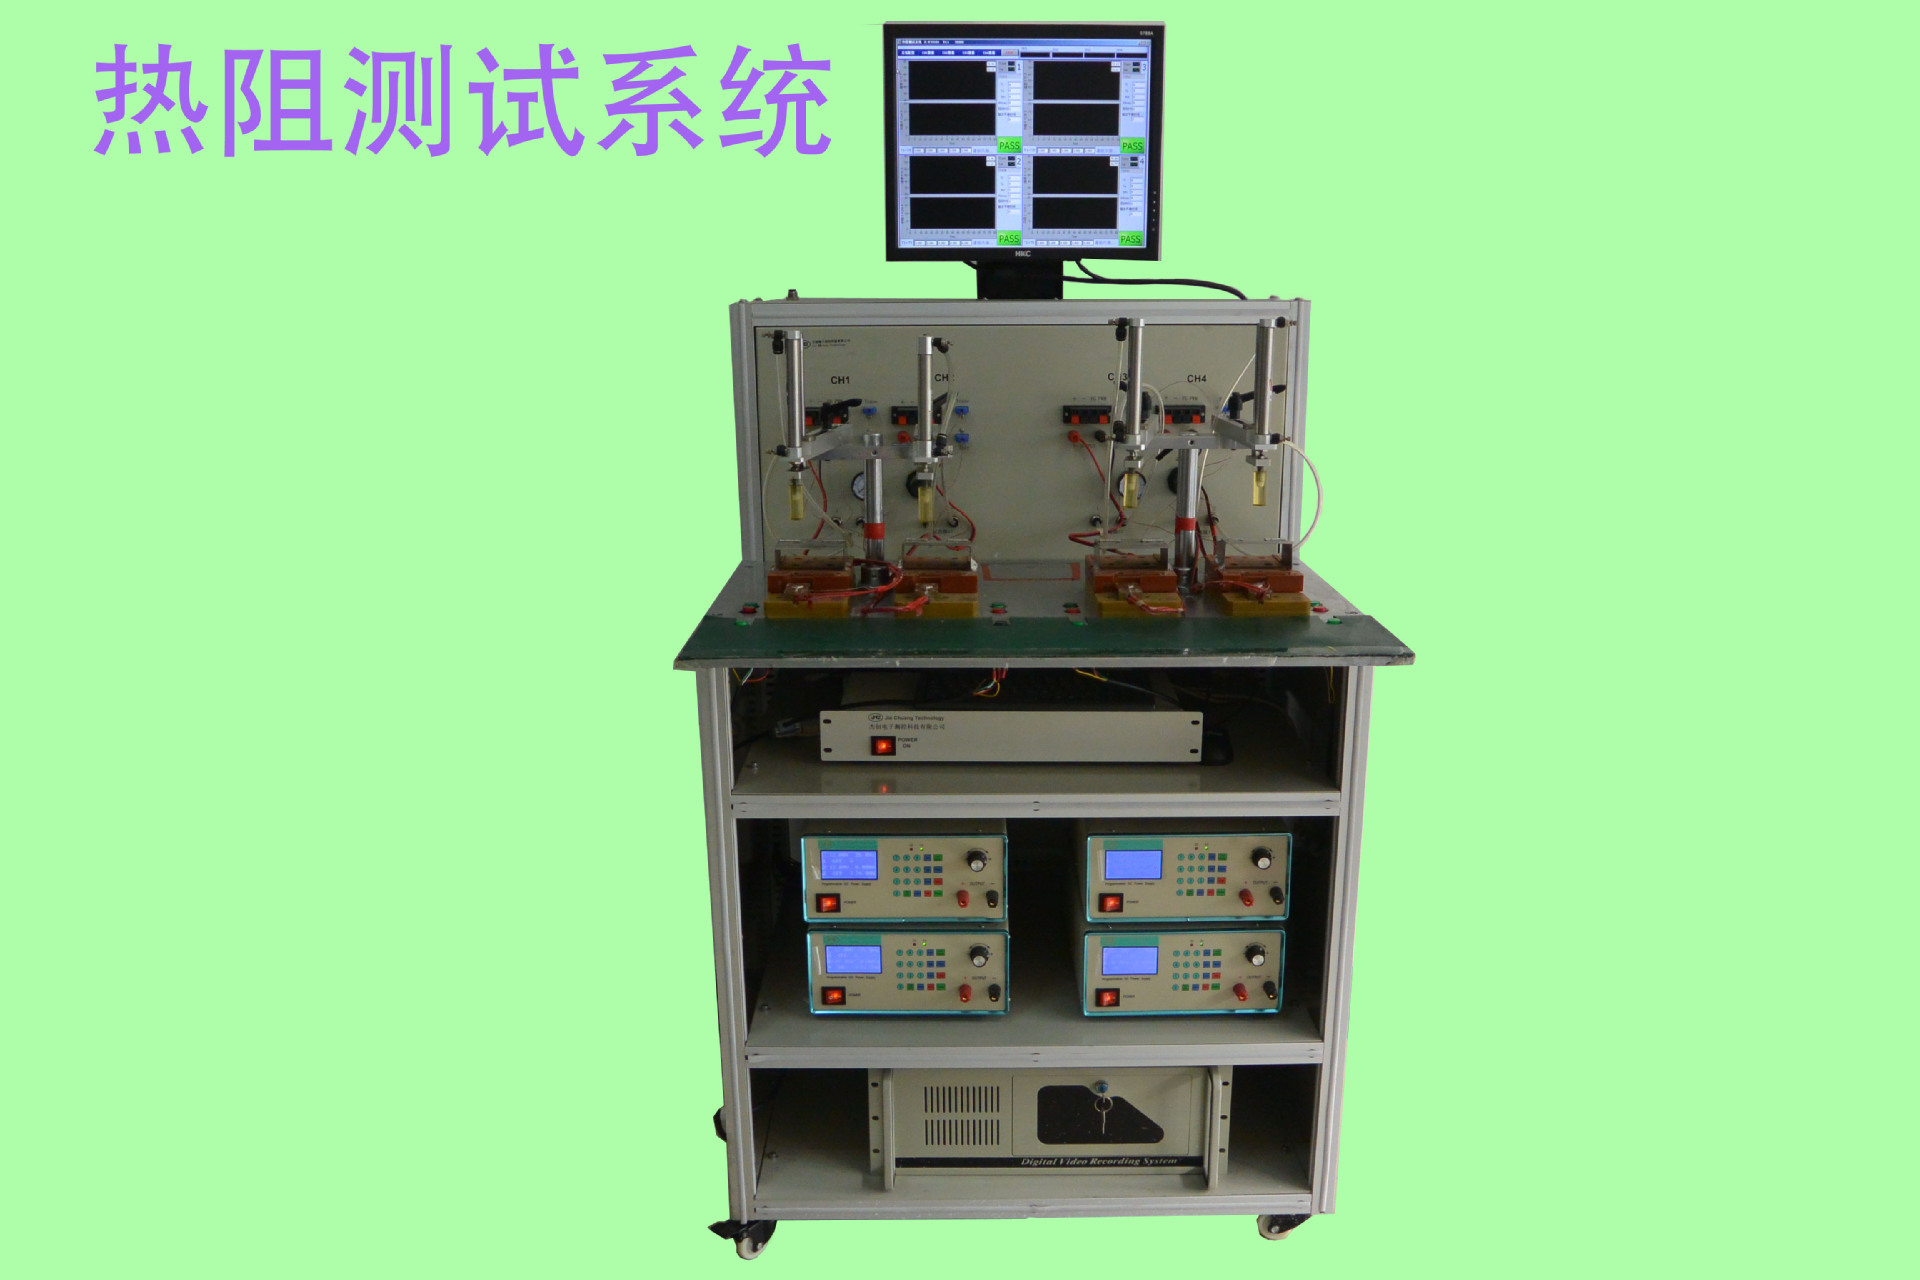 四通道散热器热阻测试系统 RTH-14041